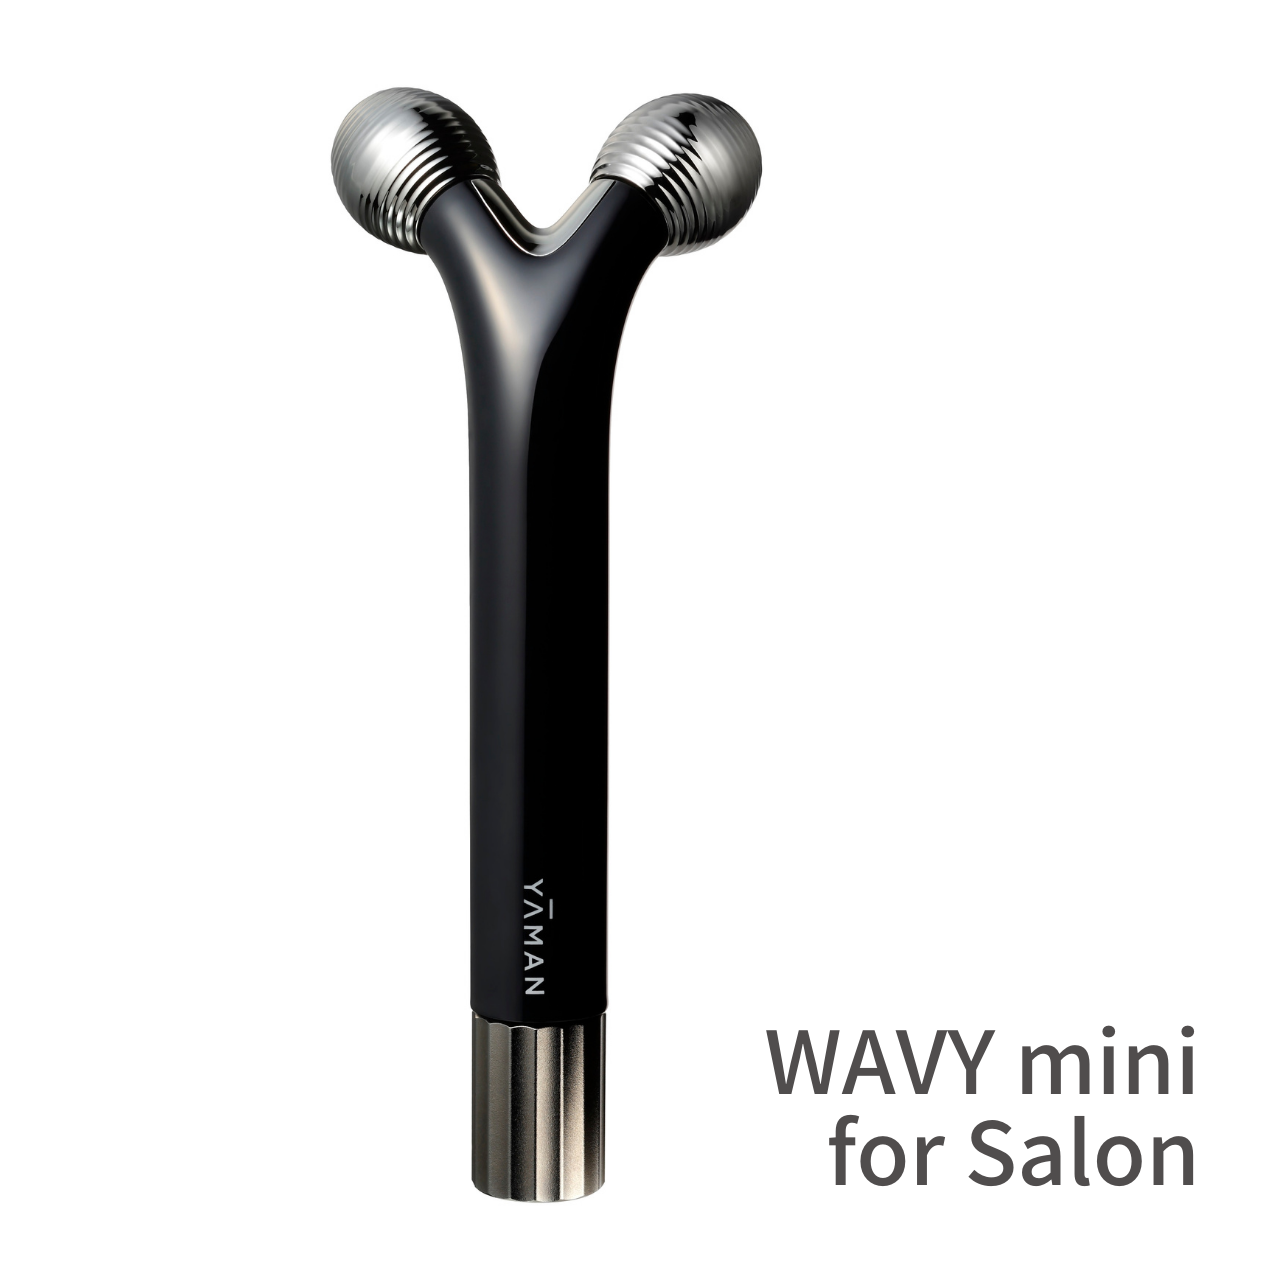 WAVY mini for Salon